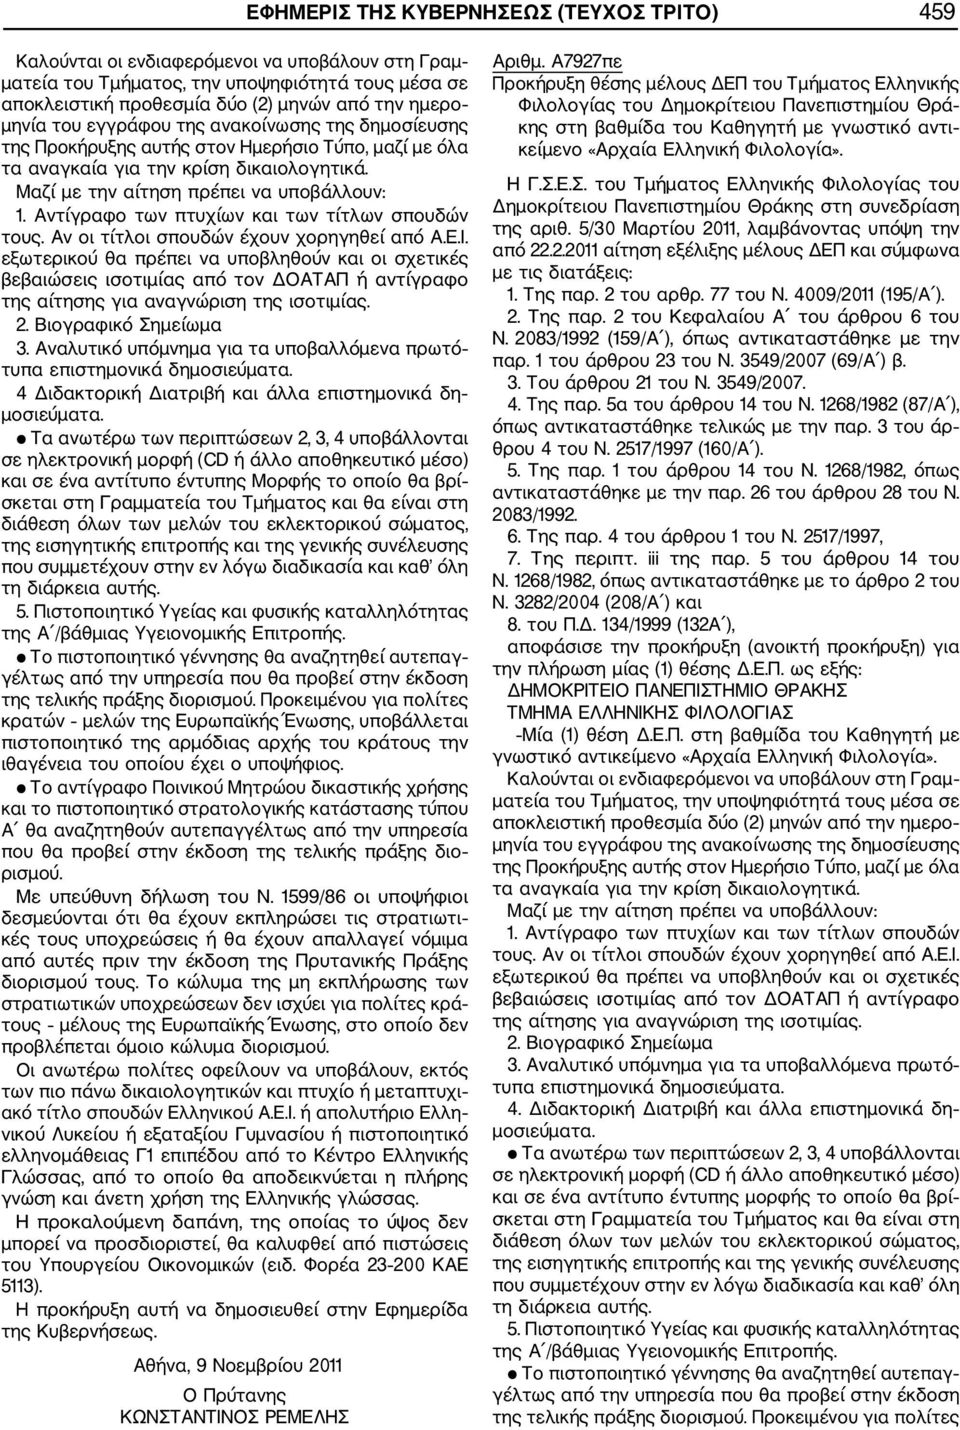 Ε.Σ. του Τμήματος Ελληνικής Φιλολογίας του Δημοκρίτειου Πανεπιστημίου Θράκης στη συνεδρίαση της αριθ. 5/30 Μαρτίου 2011, λαμβάνοντας υπόψη την από 22.2.2011 αίτηση εξέλιξης μέλους ΔΕΠ και σύμφωνα με τις διατάξεις: 1.